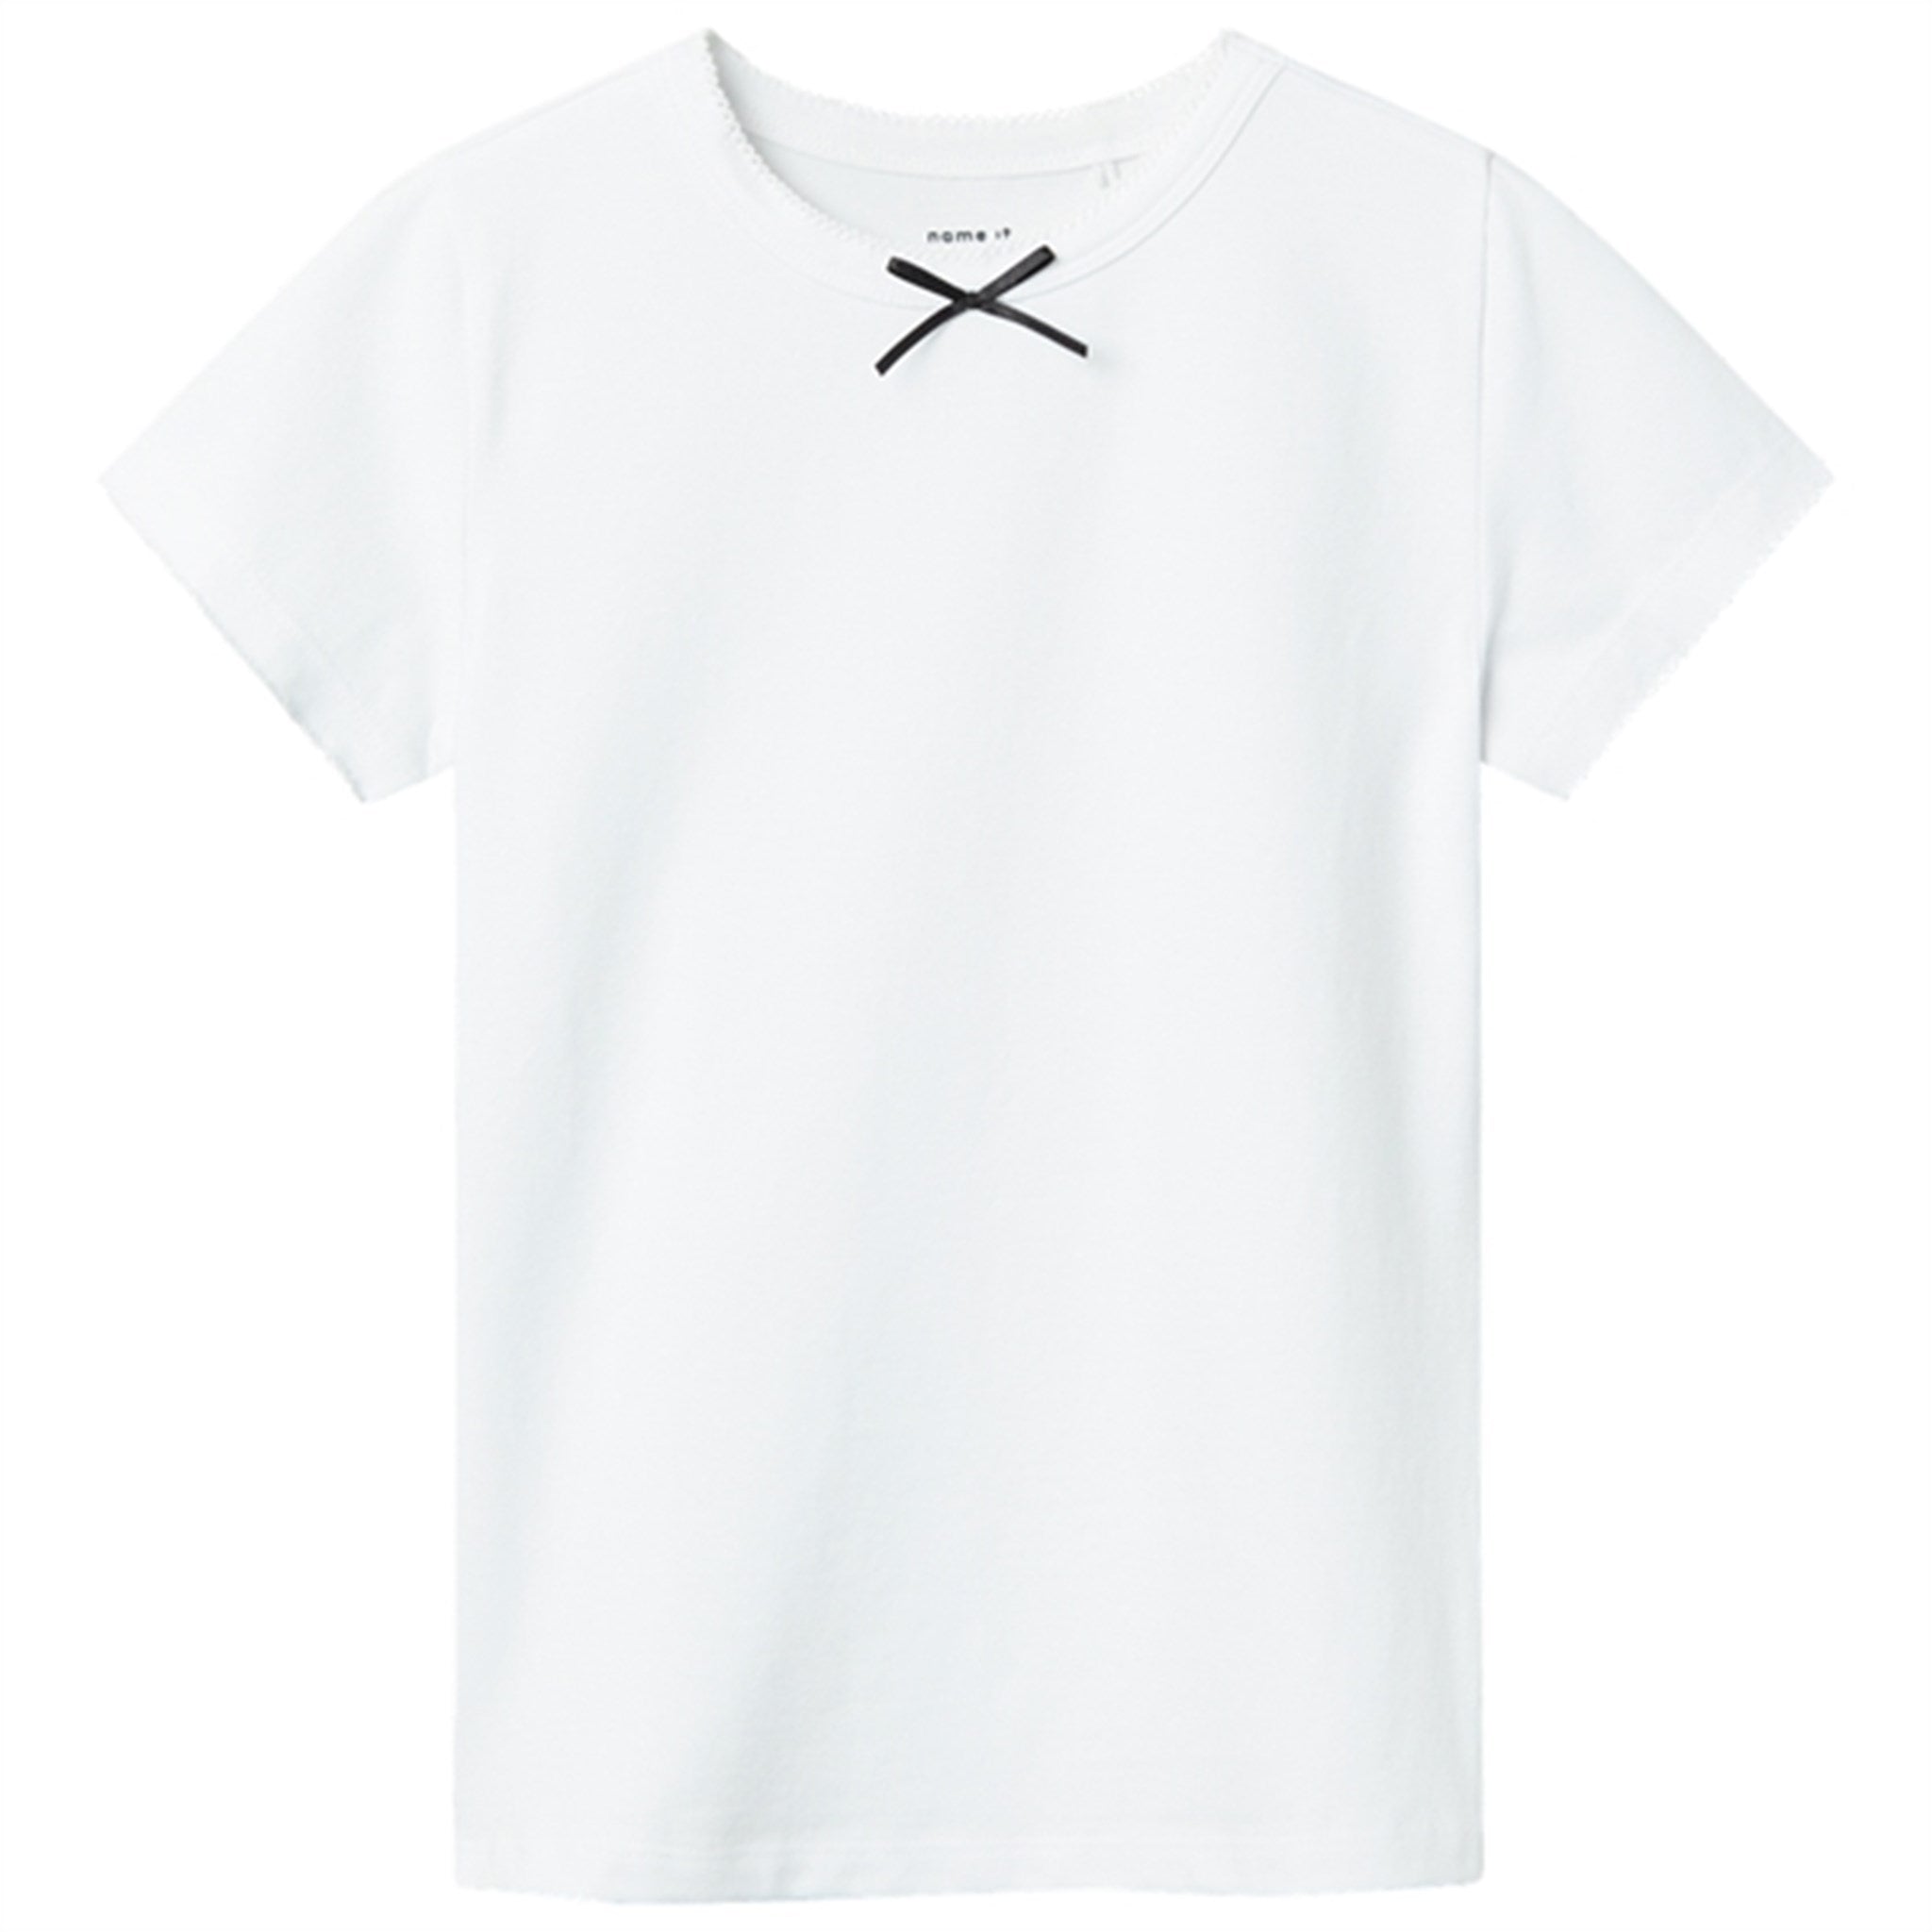 Name it Bright White Hejane T-Shirt - Str. 158/164